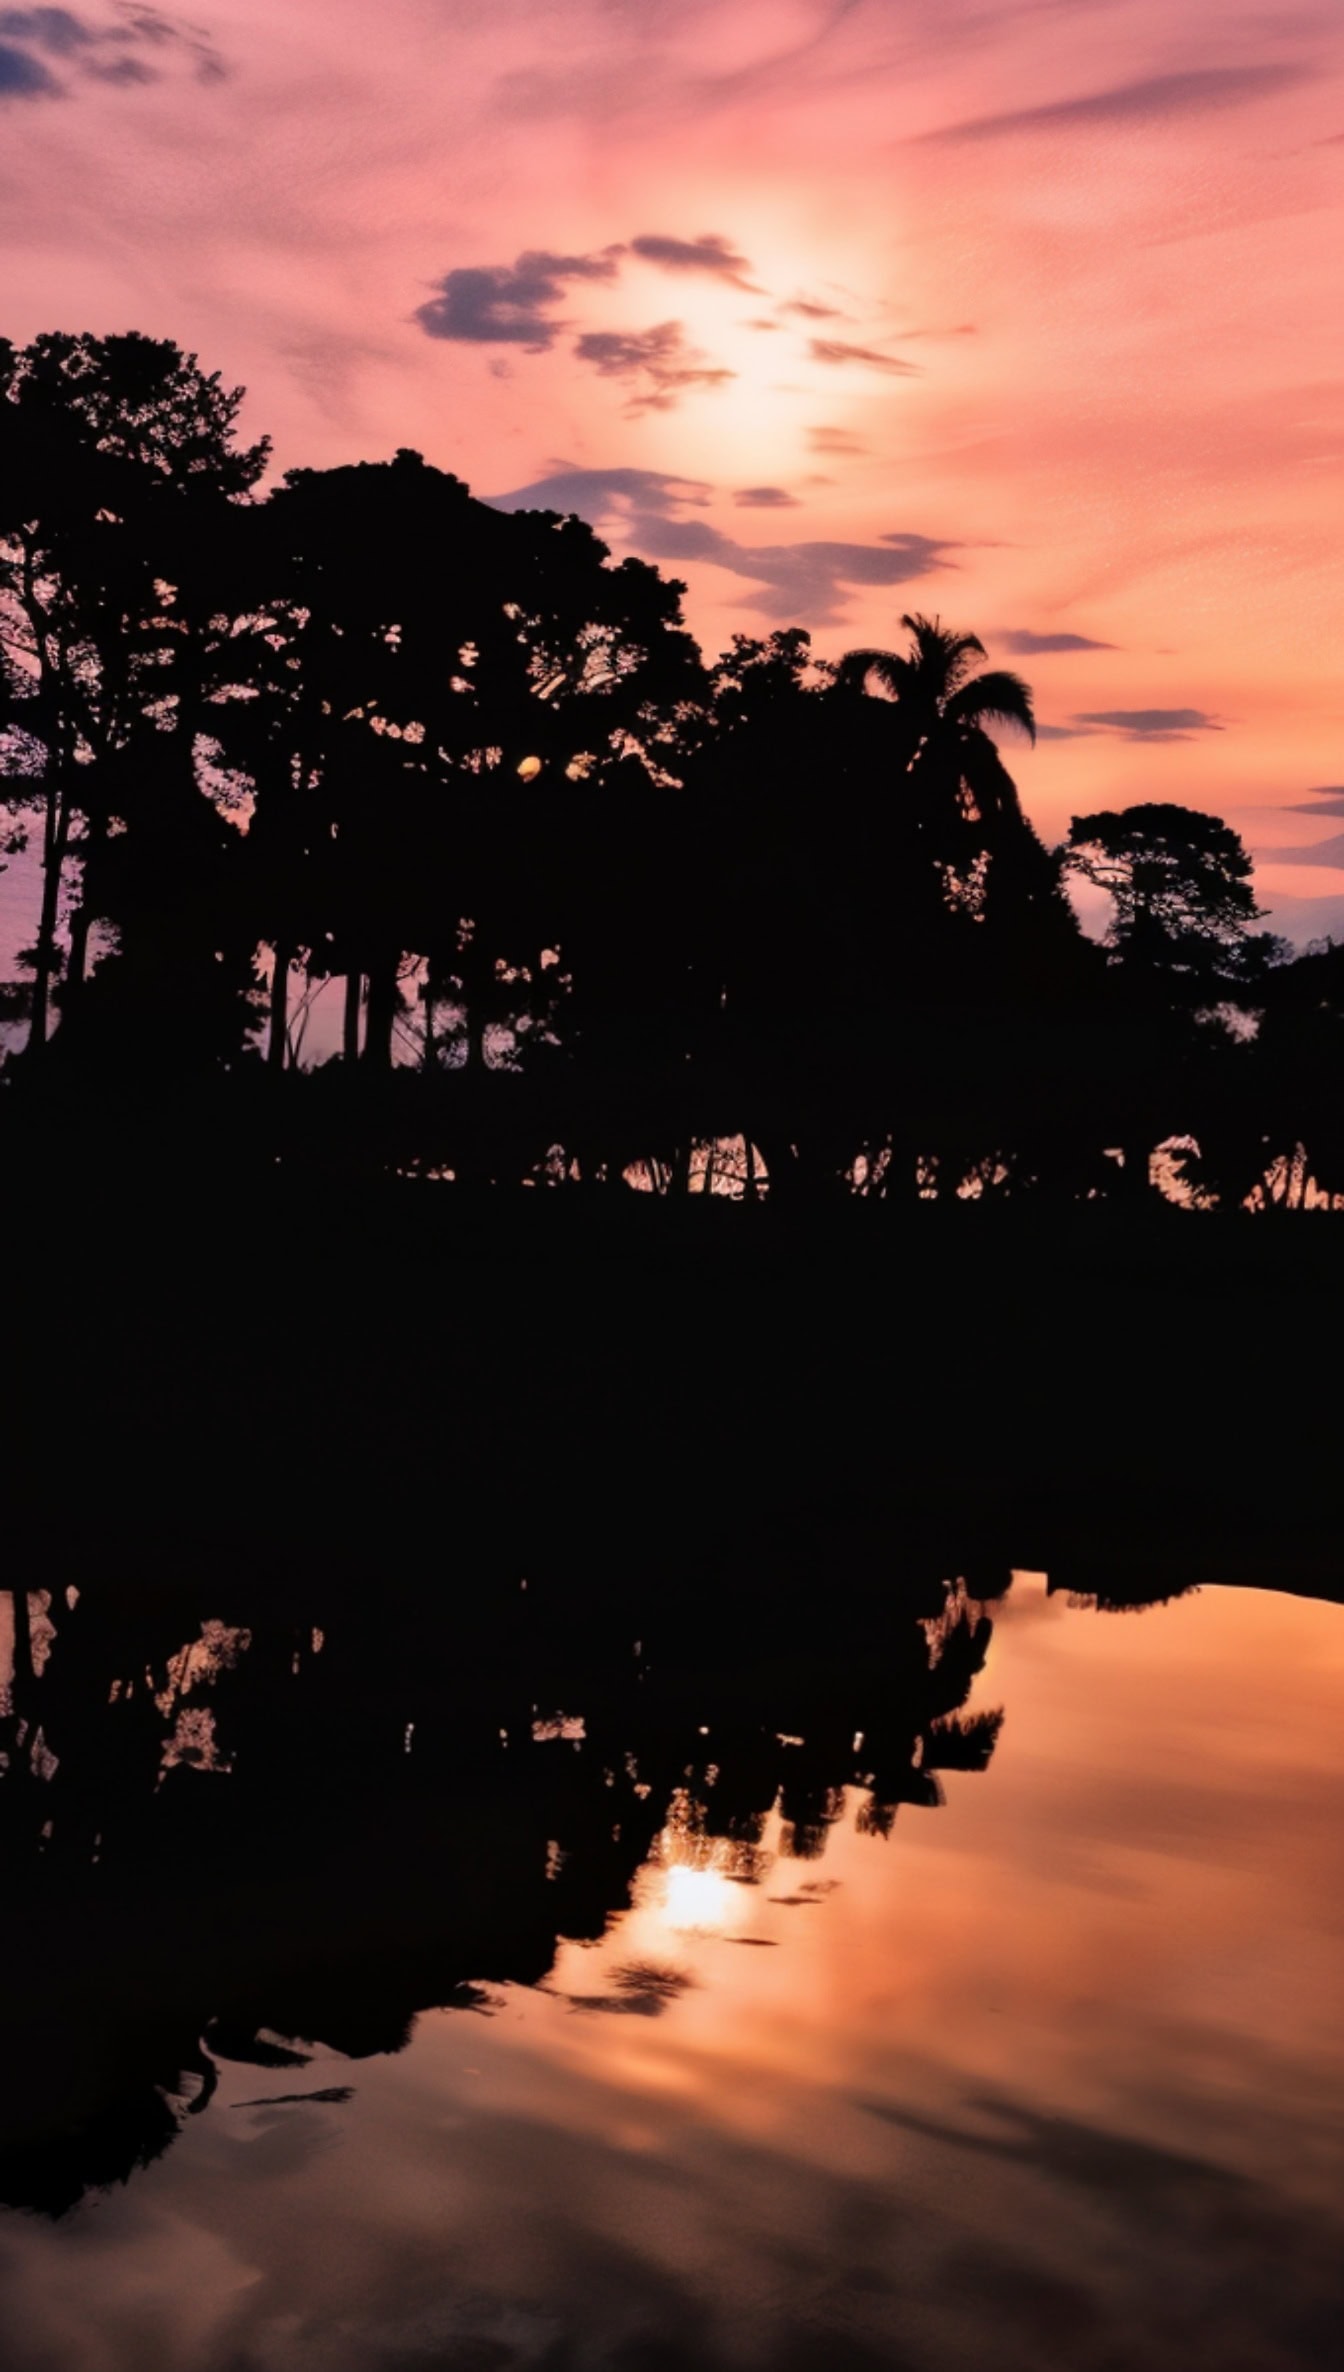 Mörk silhuett av träd som reflekteras i ett vatten med orange-rosa himmel med moln vid soluppgången